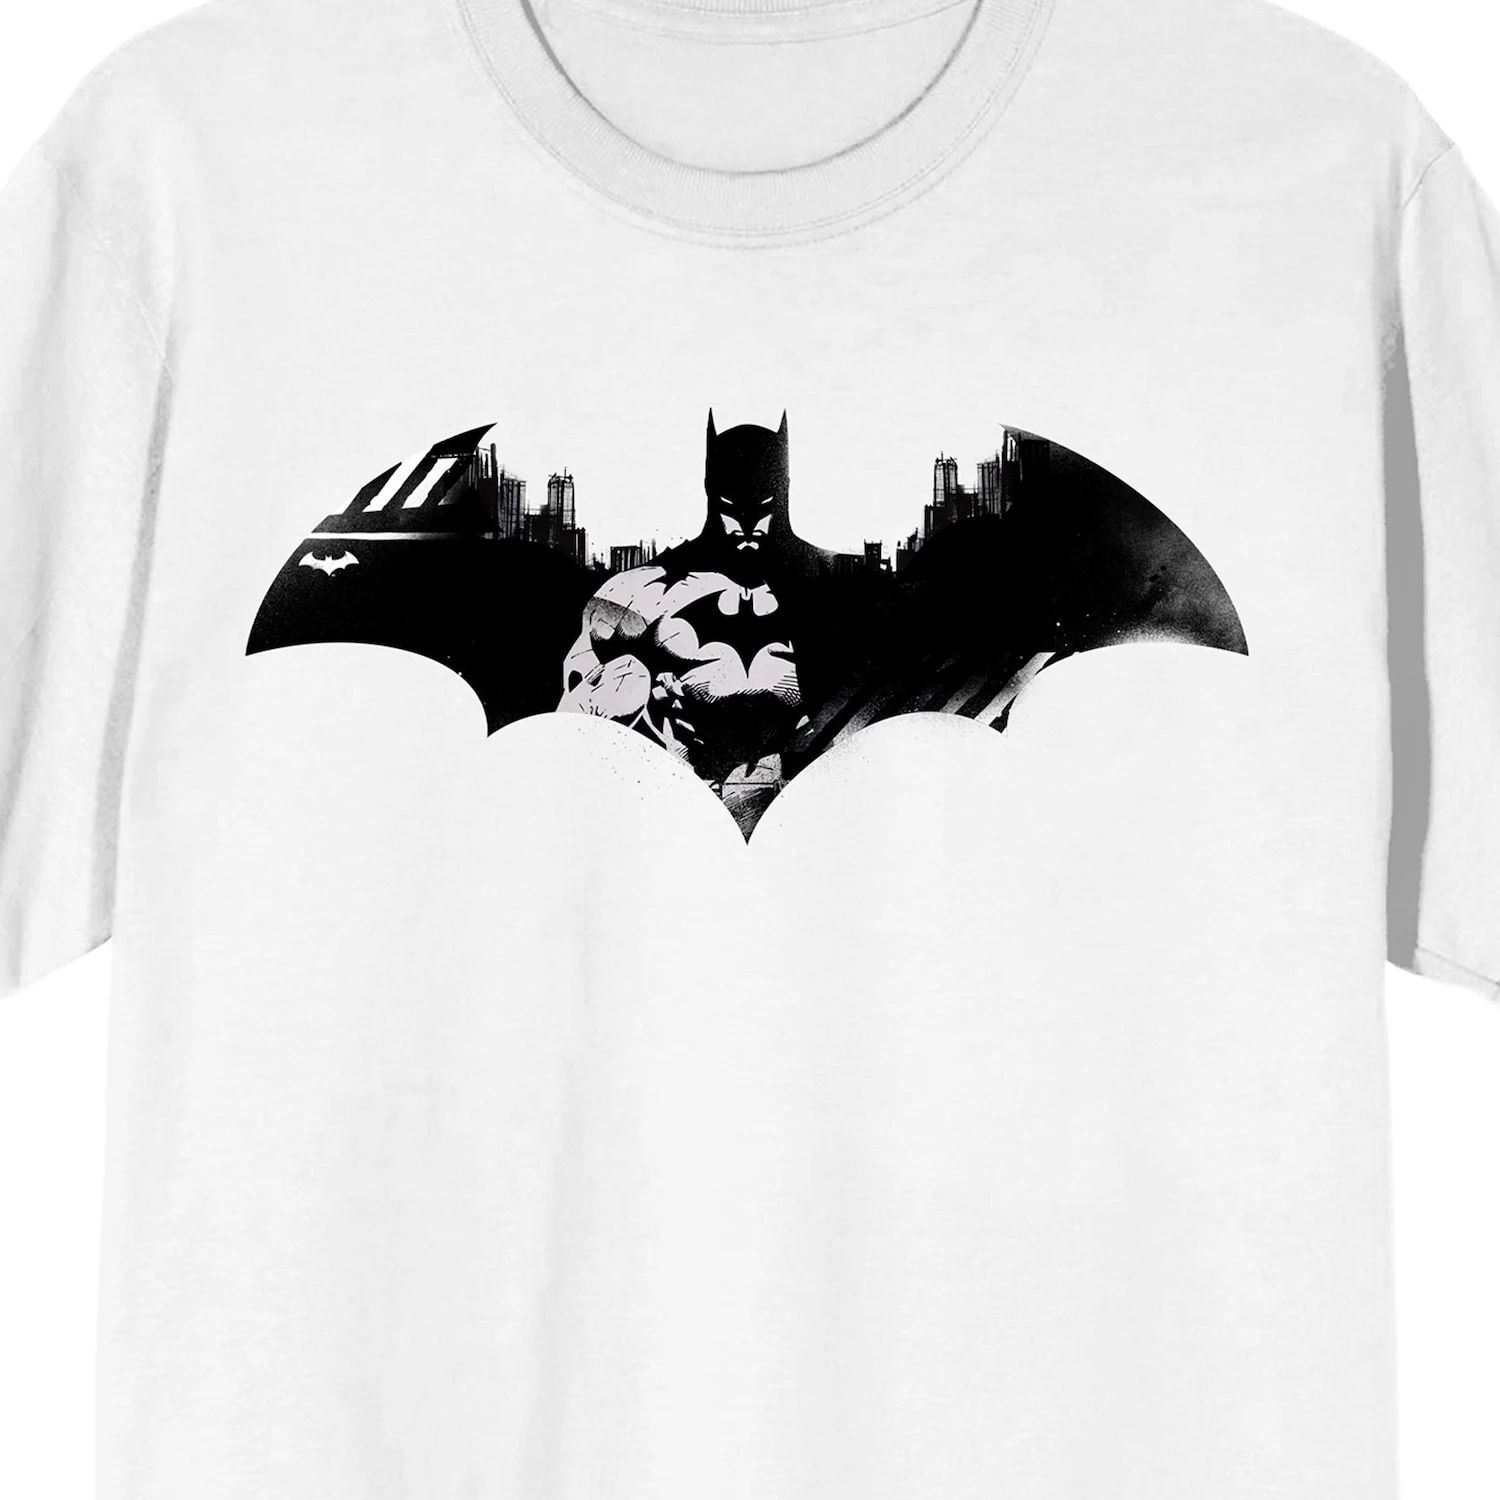 Мужская футболка с логотипом DC Comics Batman Licensed Character канцелярский набор batman logo strike